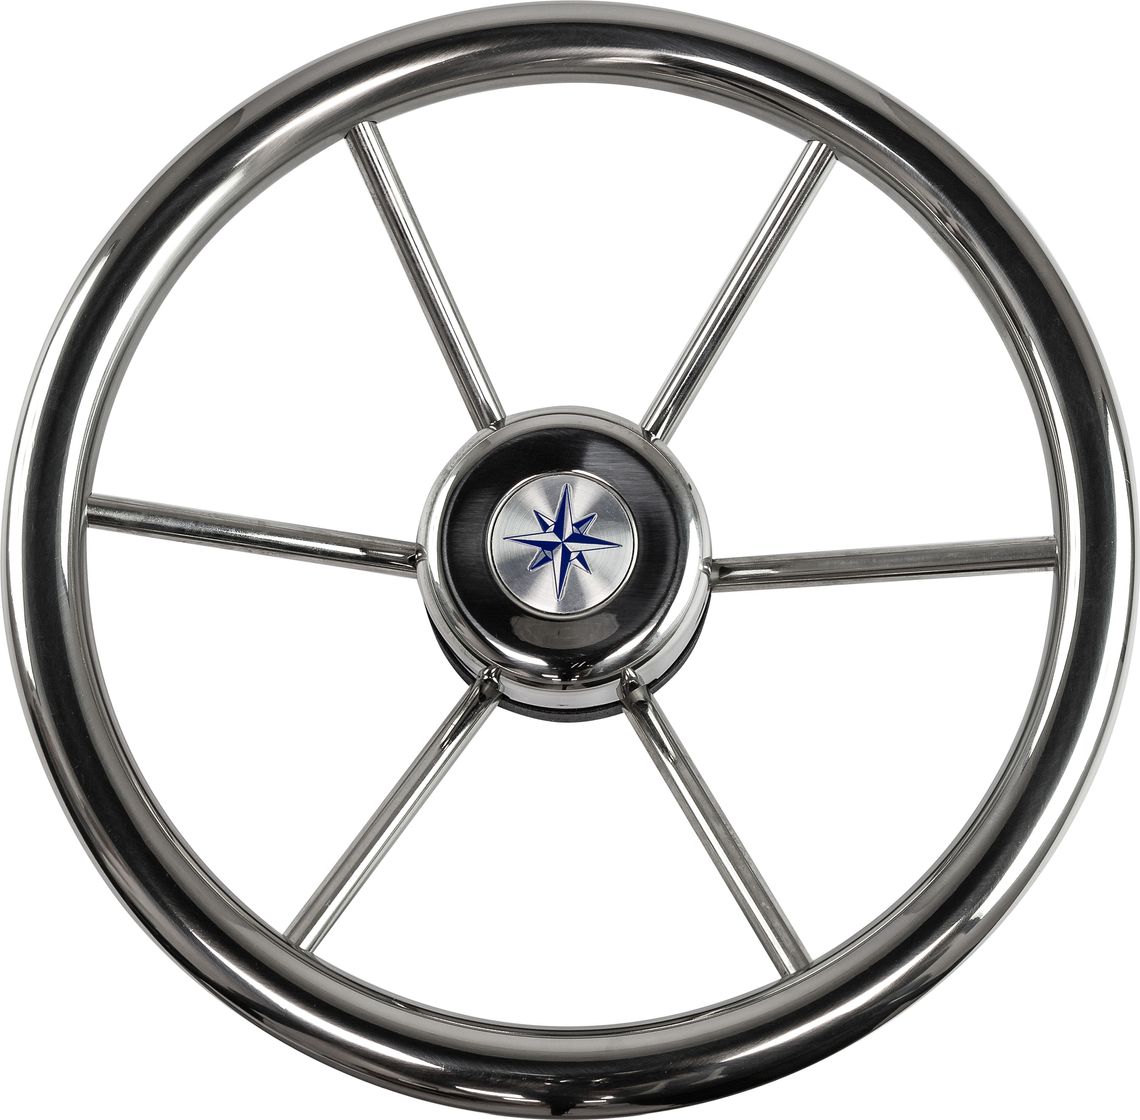 Рулевое колесо LEADER INOX нержавеющий обод серебряные спицы д. 320 мм VN7332-22 рулевое колесо leader wood деревянный обод серебряные спицы д 340 мм vn7340 33